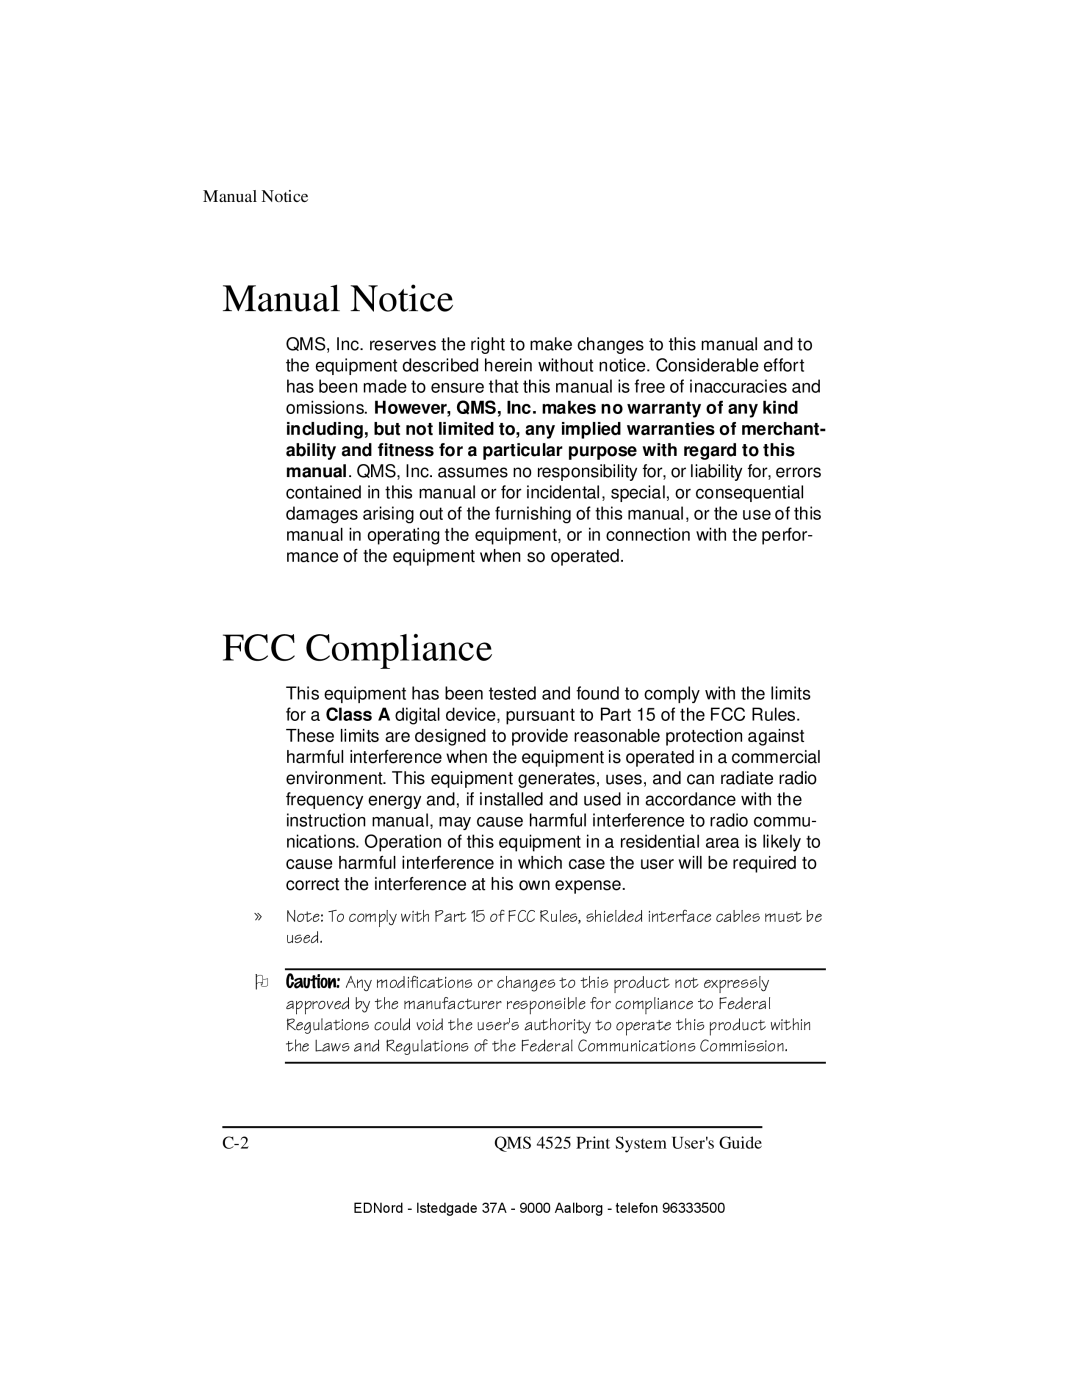 IBM QMS 4525 manual Manual Notice, FCC Compliance, 2 &DXWLRQ$Q\PRGLILFDWLRQVRUFKDQJHVWRWKLVSURGXFWQRWHSUHVVO 